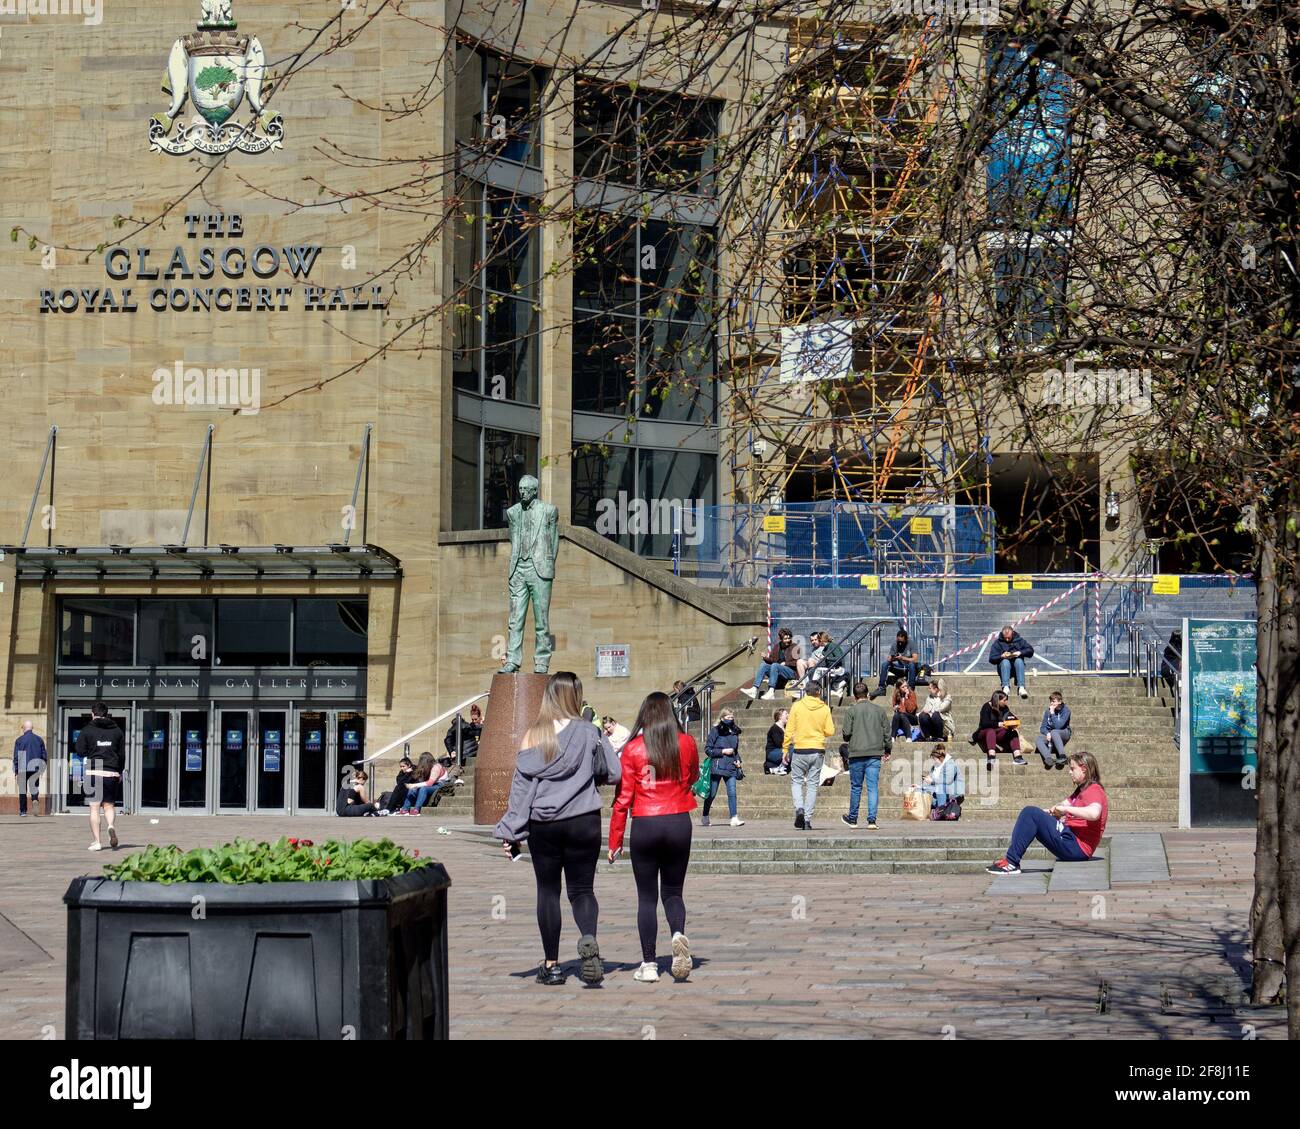 Glasgow, Schottland, Großbritannien. 14. April 2021. Wetter in Großbritannien: Sonnig im Stadtzentrum, während die Menschen die Stilmeile buchanan stret mit den Stufen an der Spitze als Bänke mit Aussicht genutzt gingen. Quelle: Gerard Ferry/Alamy Live News Stockfoto